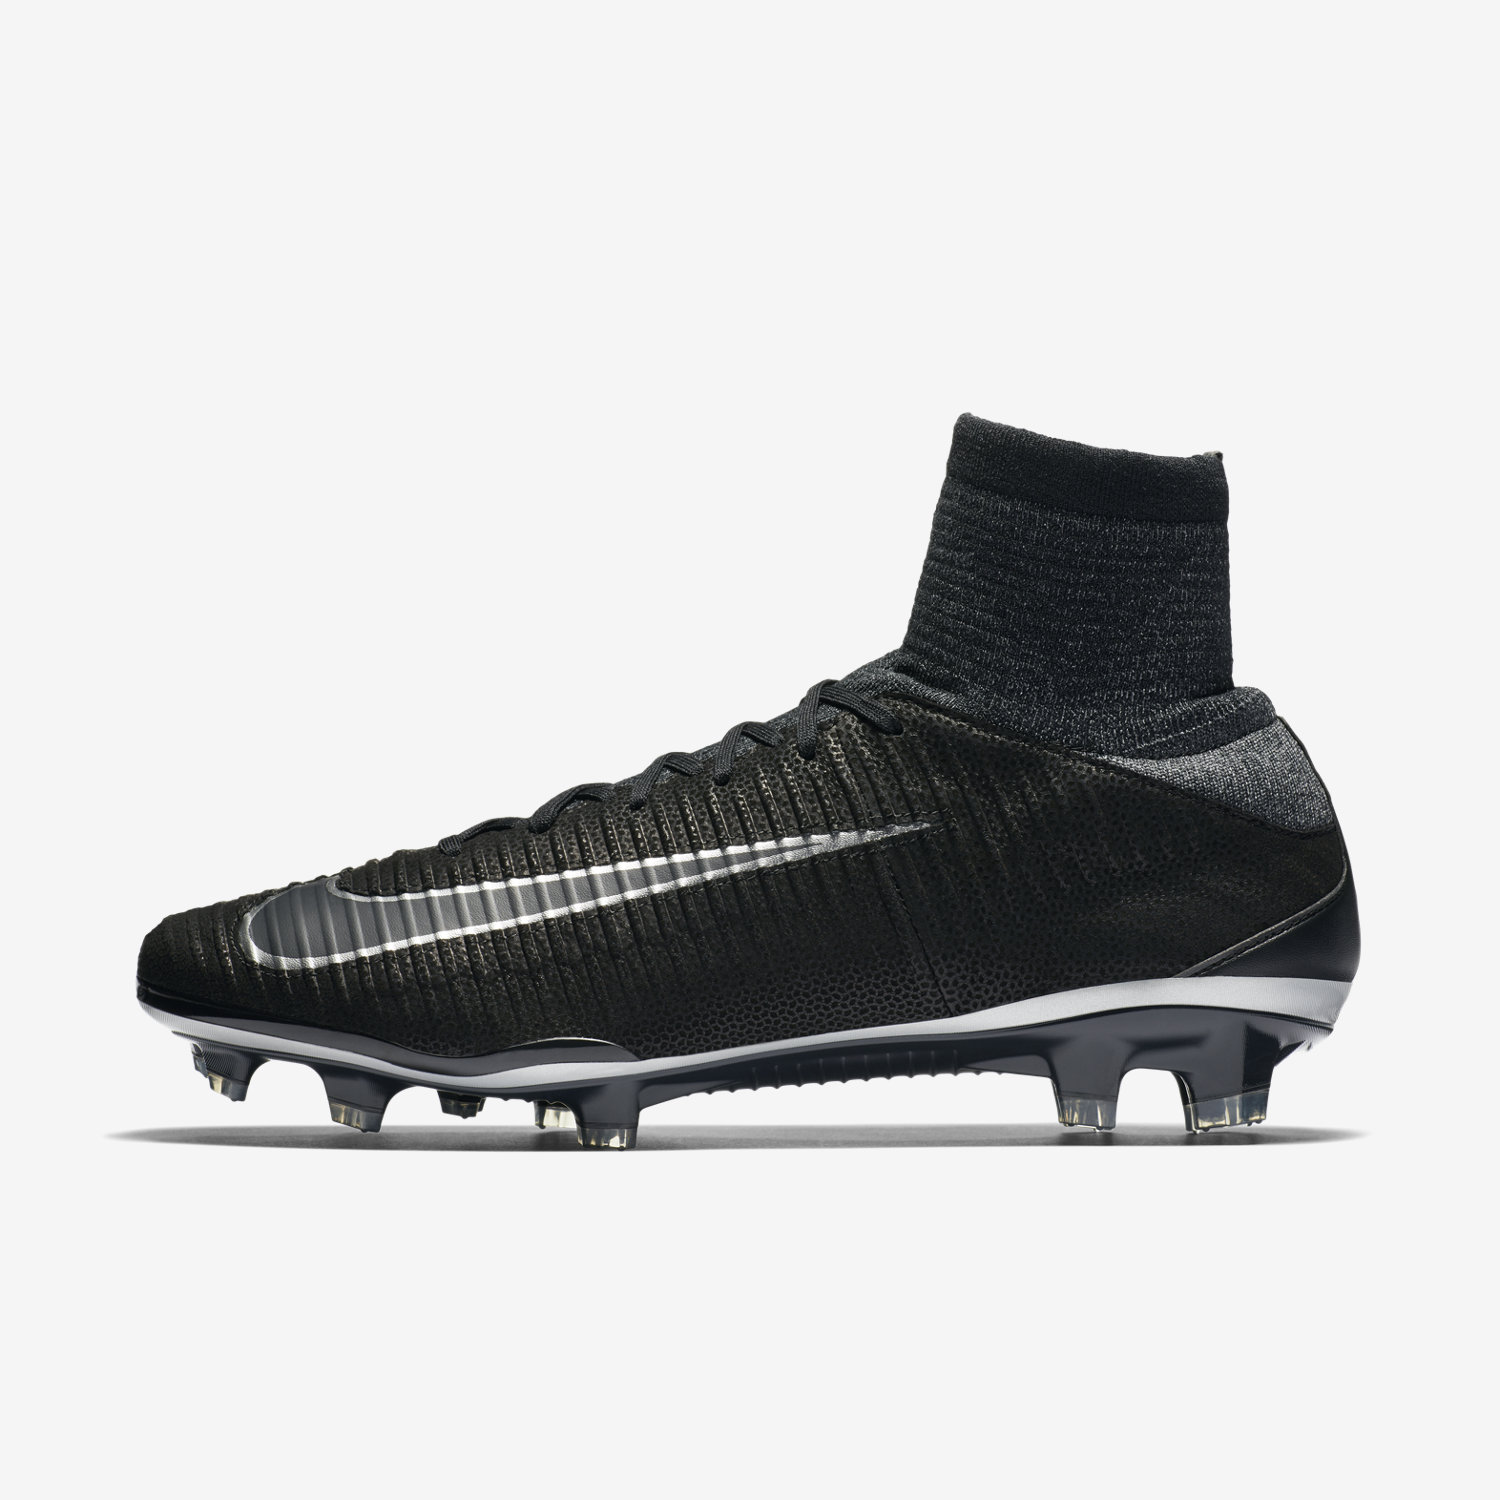 ποδοσφαιρικα παπουτσια ανδρικα Nike Mercurial Superfly V Tech Craft 2.0 FG μαυρα/βαθυ γκρι/μαυρα 671